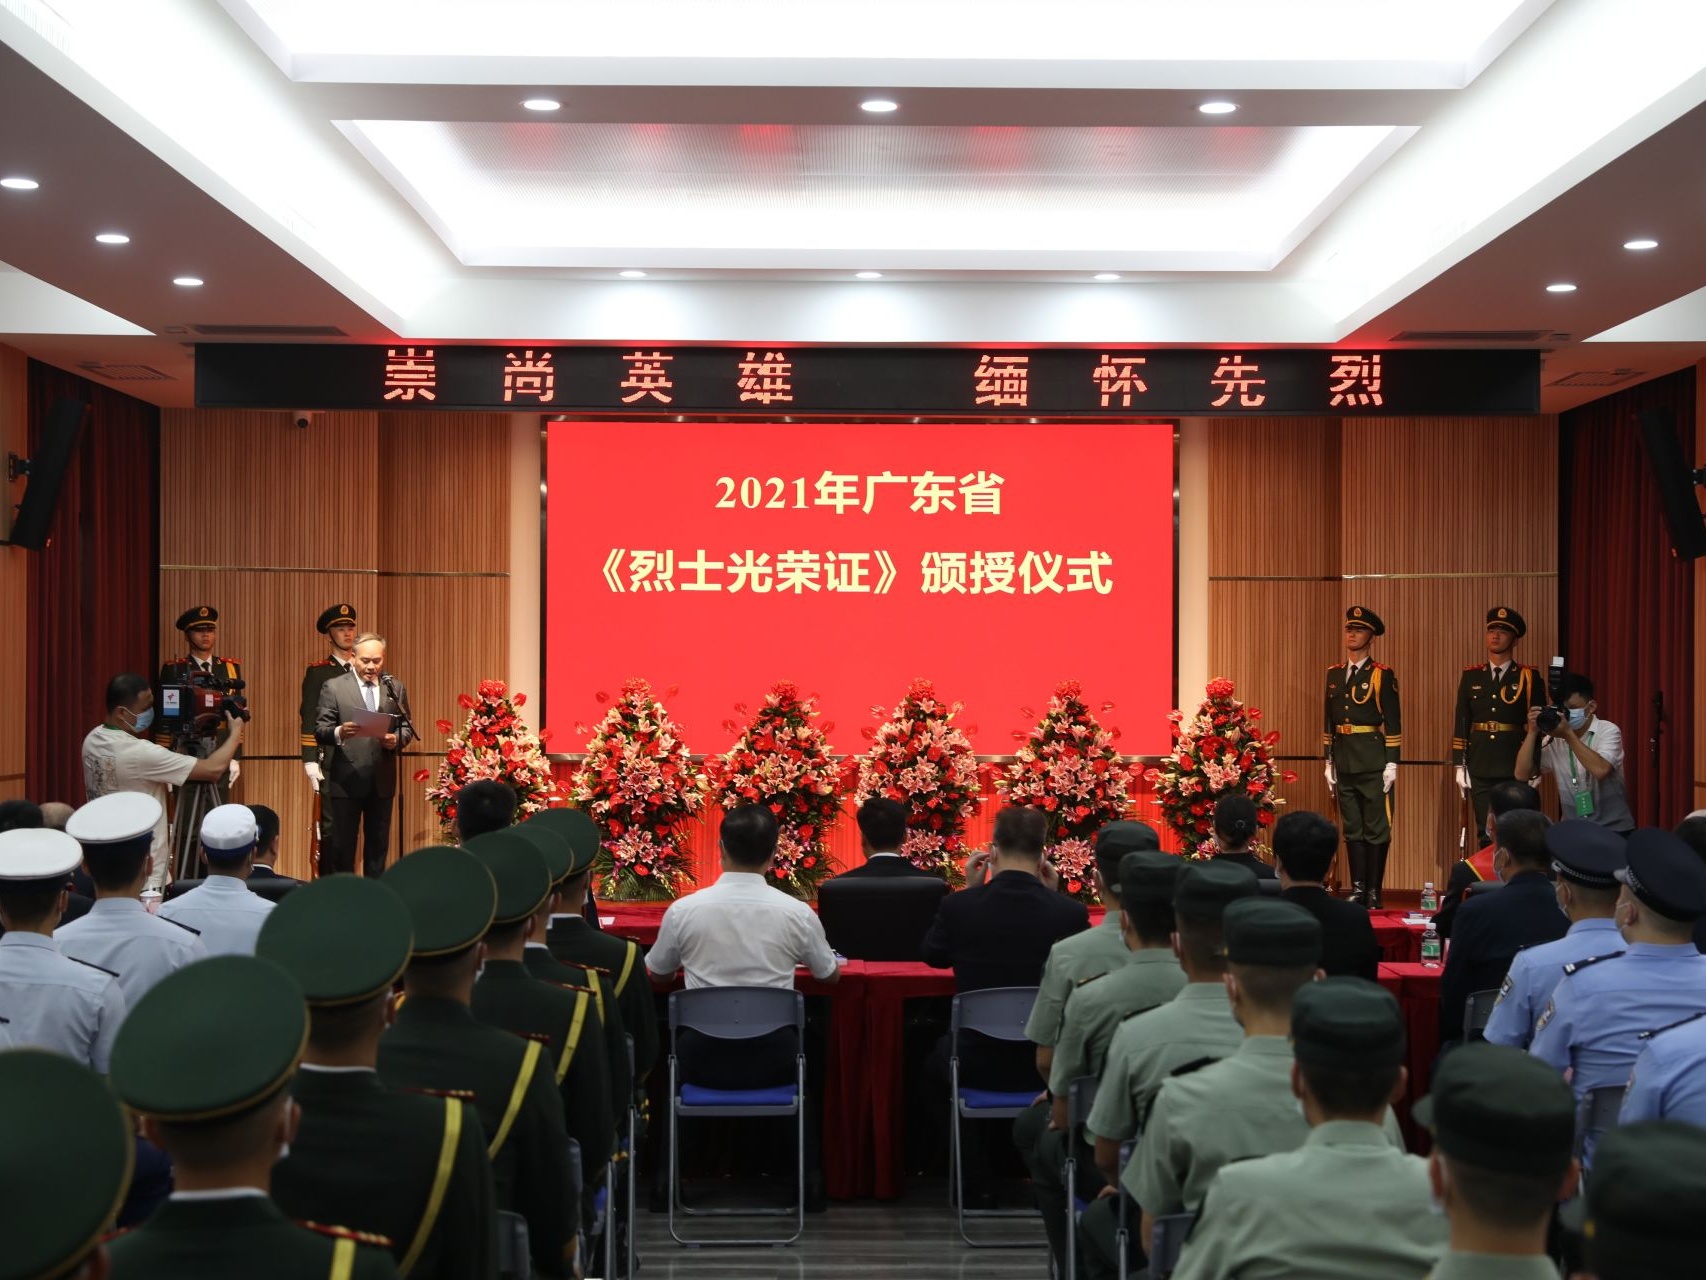 广东省政府隆重举行《烈士光荣证》颁授仪式